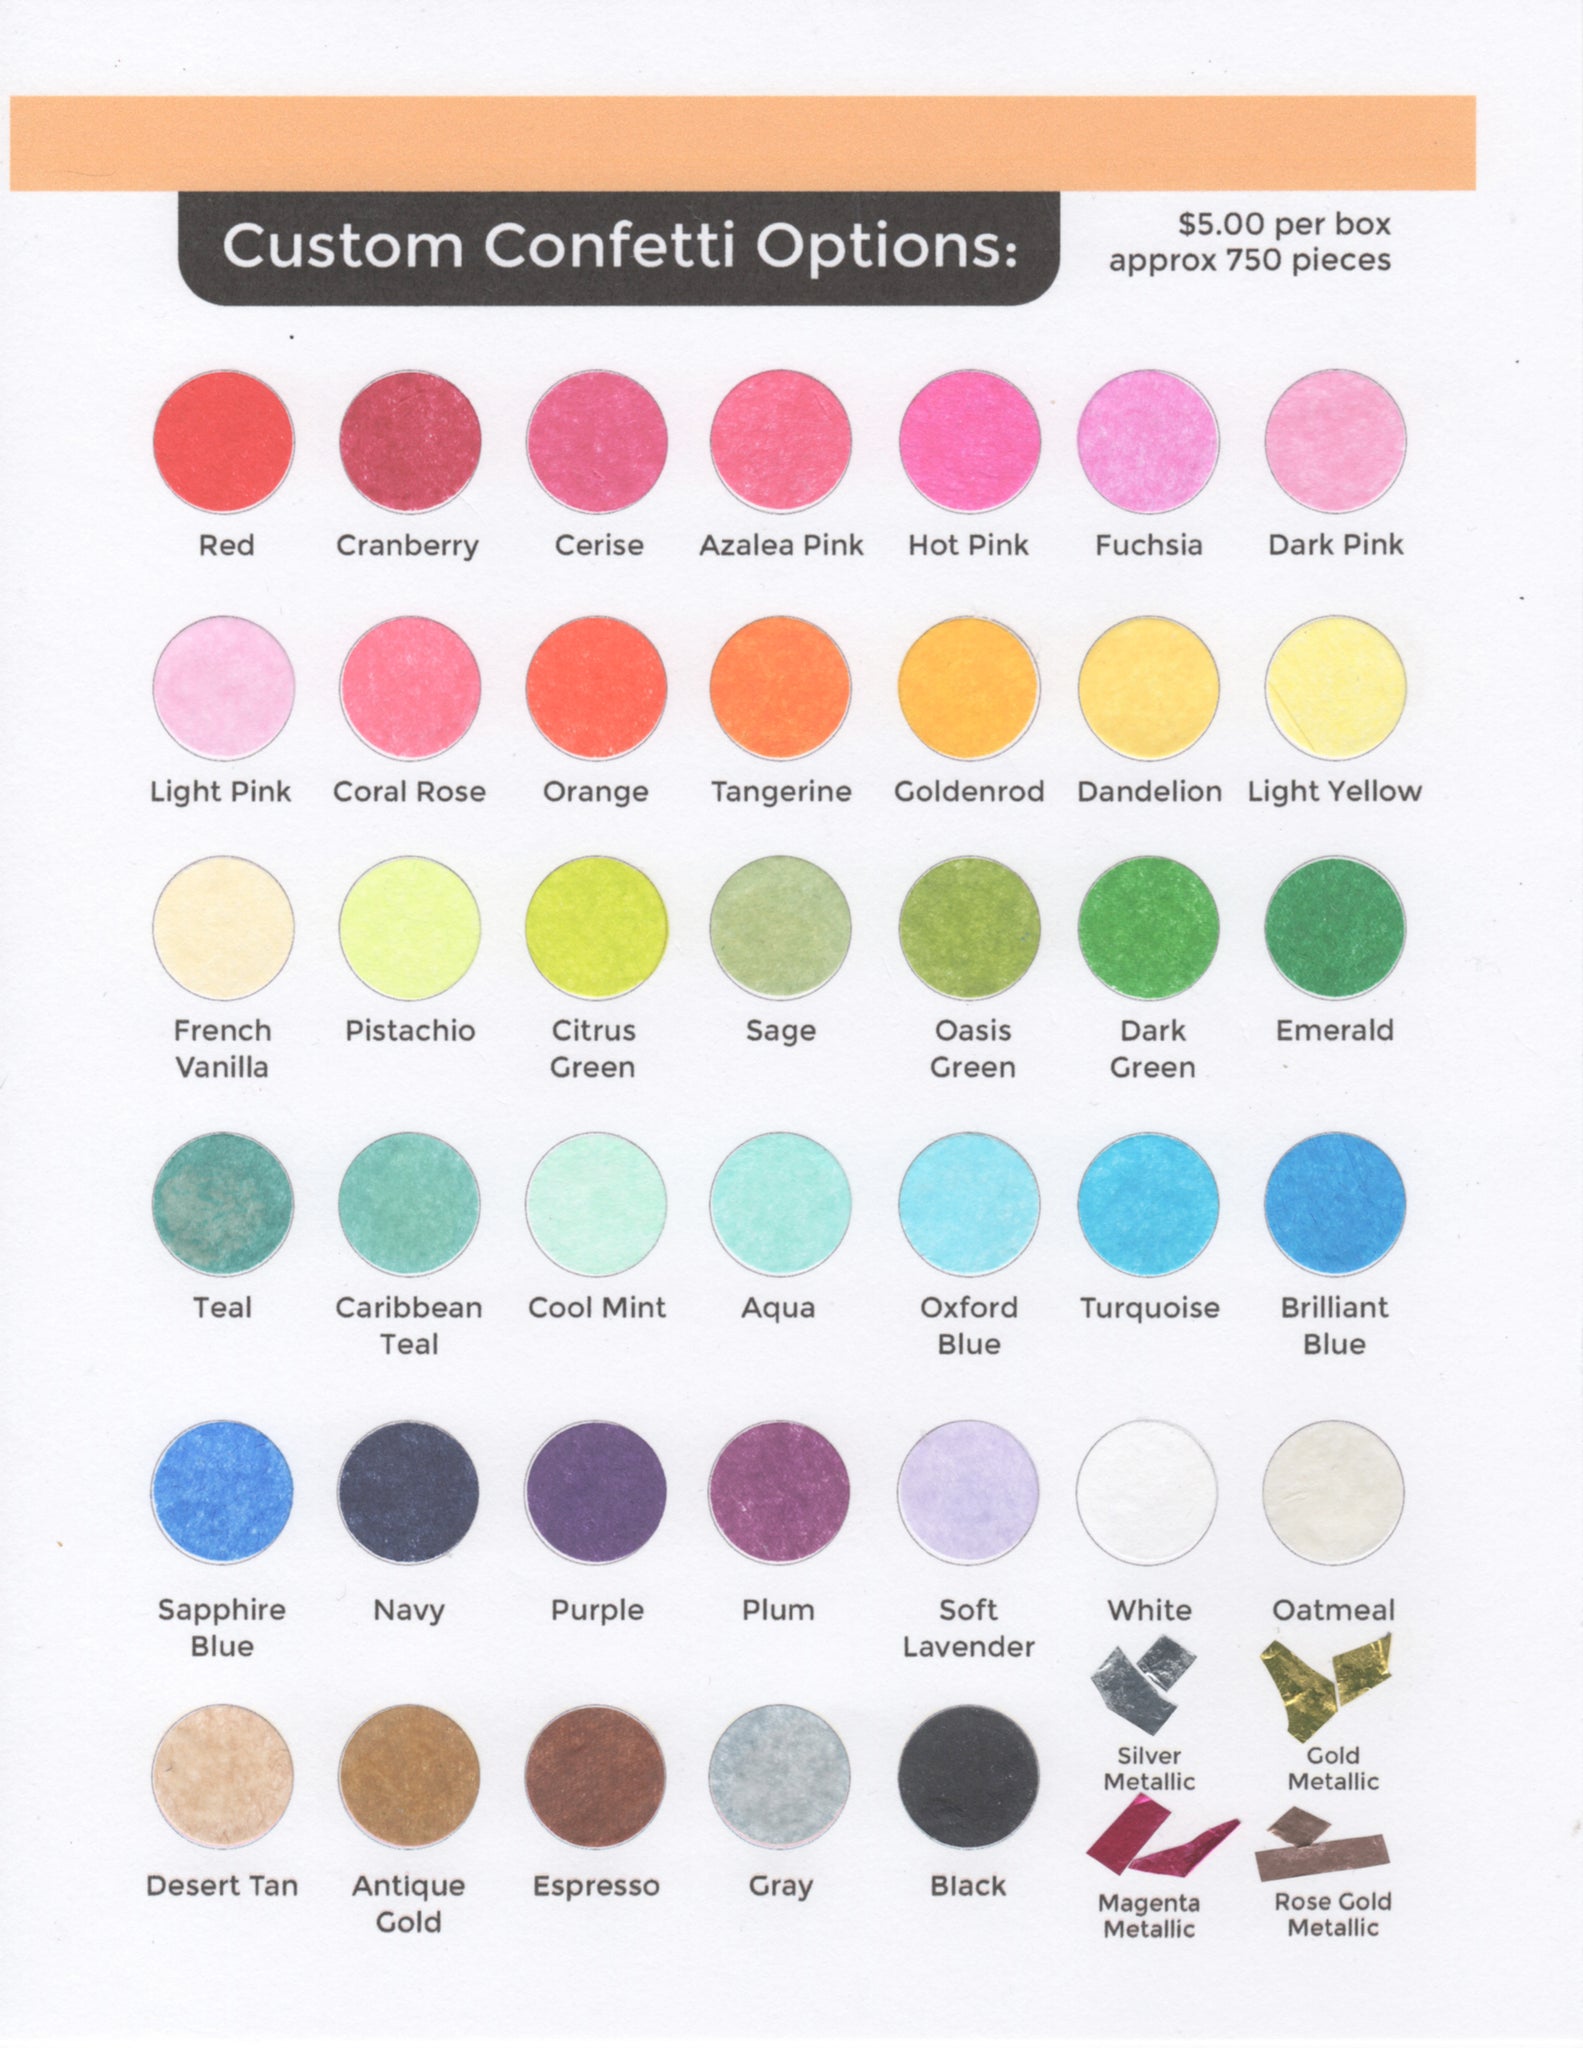 Confetti color options